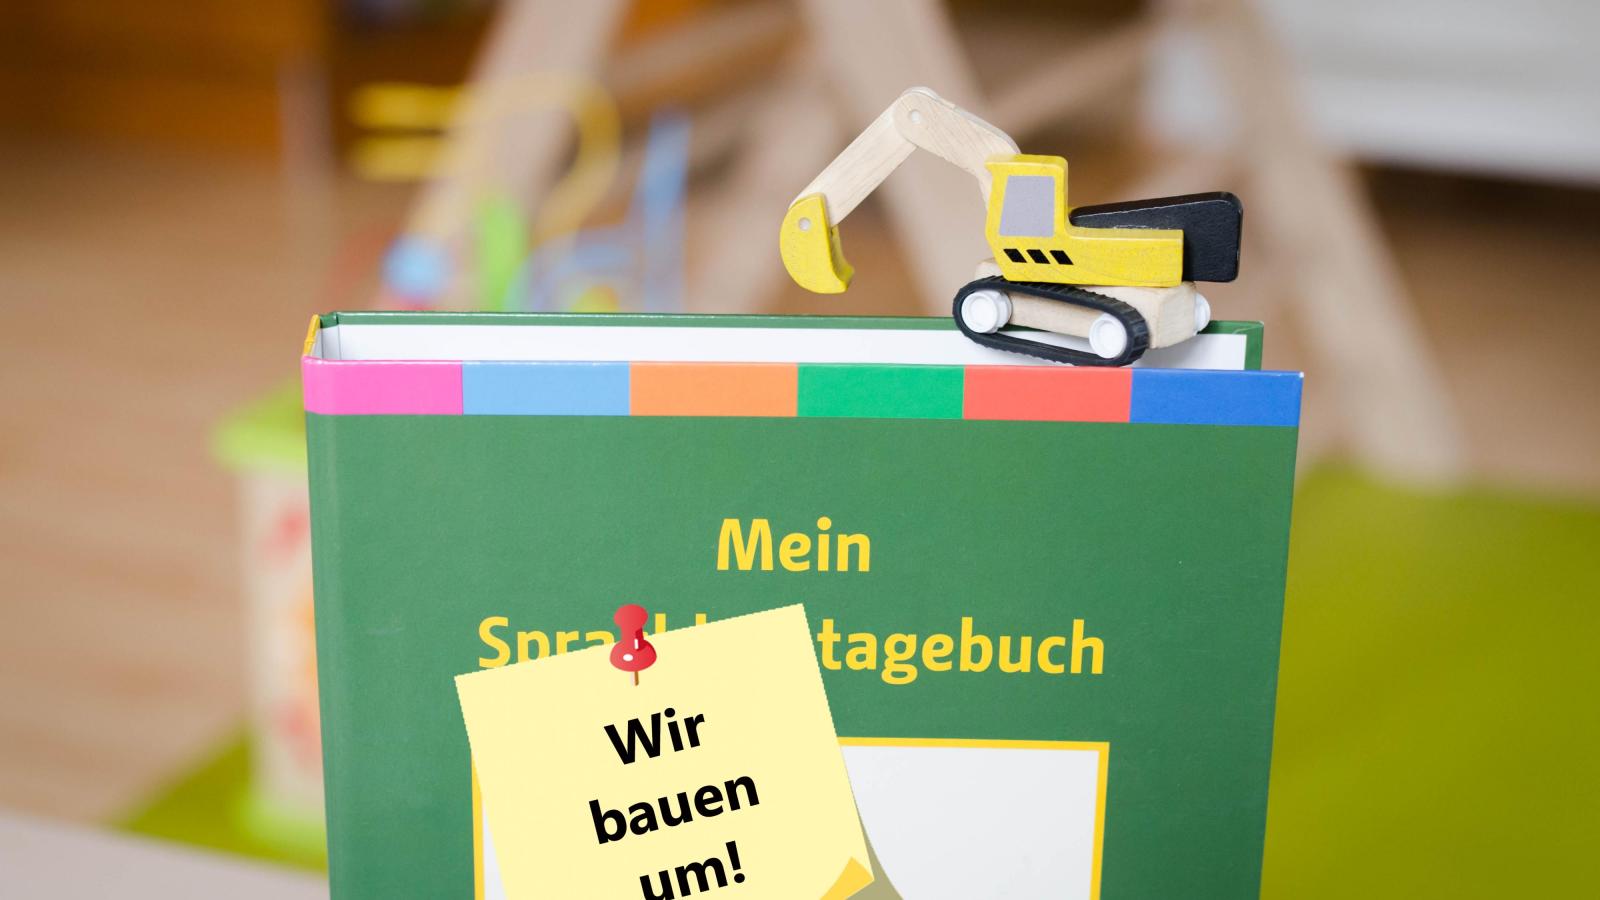 Bild eines Sprachlerntagebuchs mit einem Post-it-Zettel, auf dem steht "Wir bauen um"